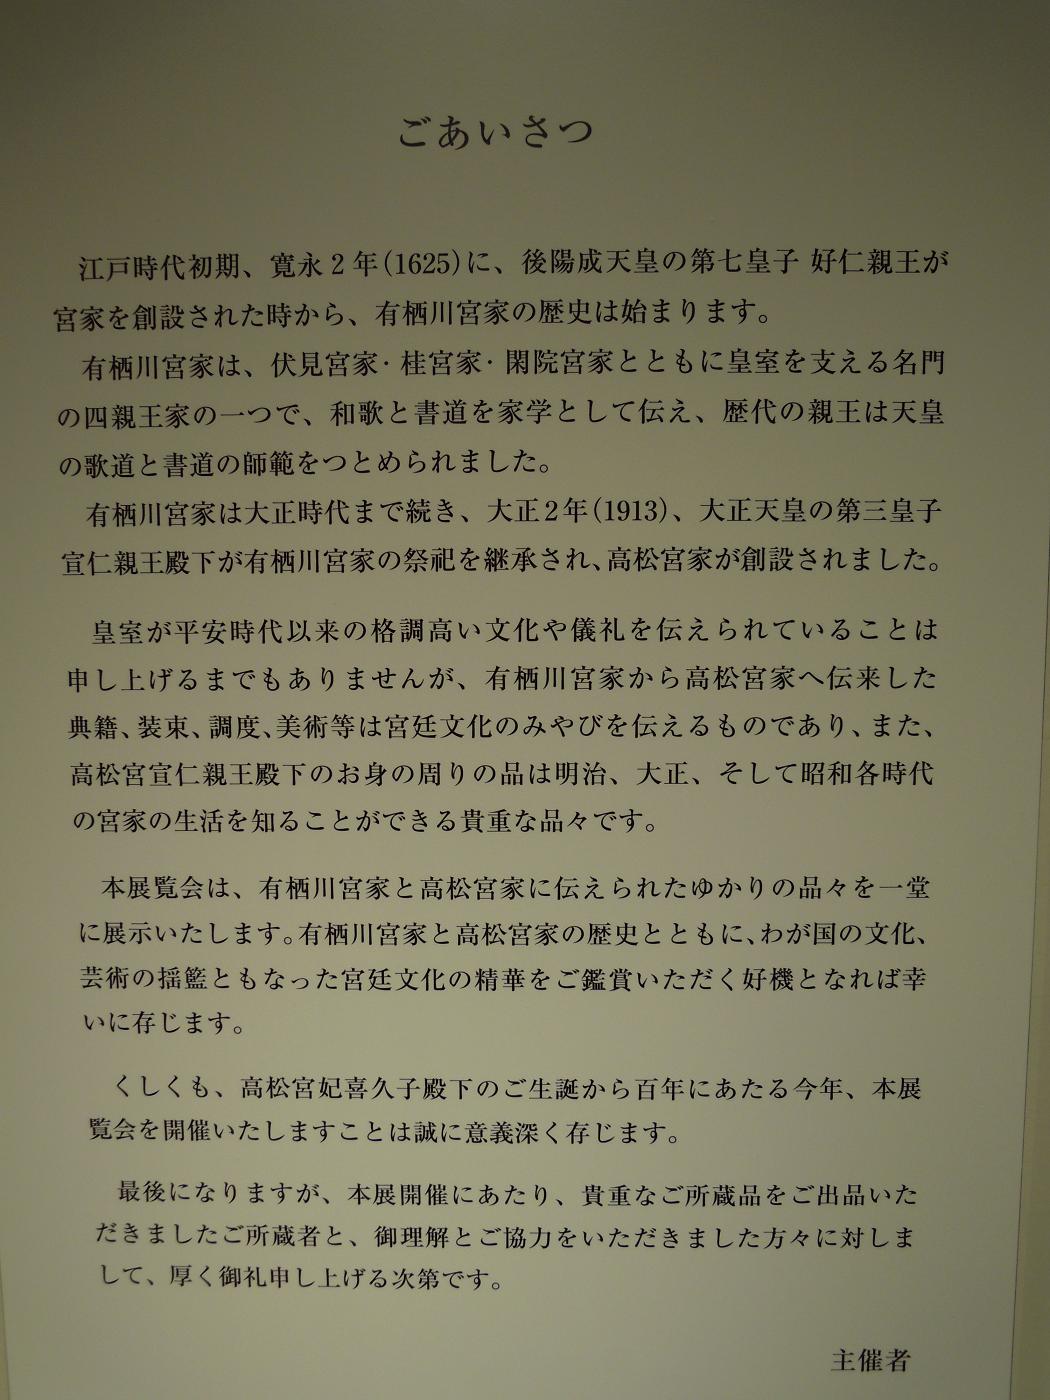 宮廷の雅展in徳川美術館に行ってきました( ^^) _旦~~_b0165454_9544151.jpg